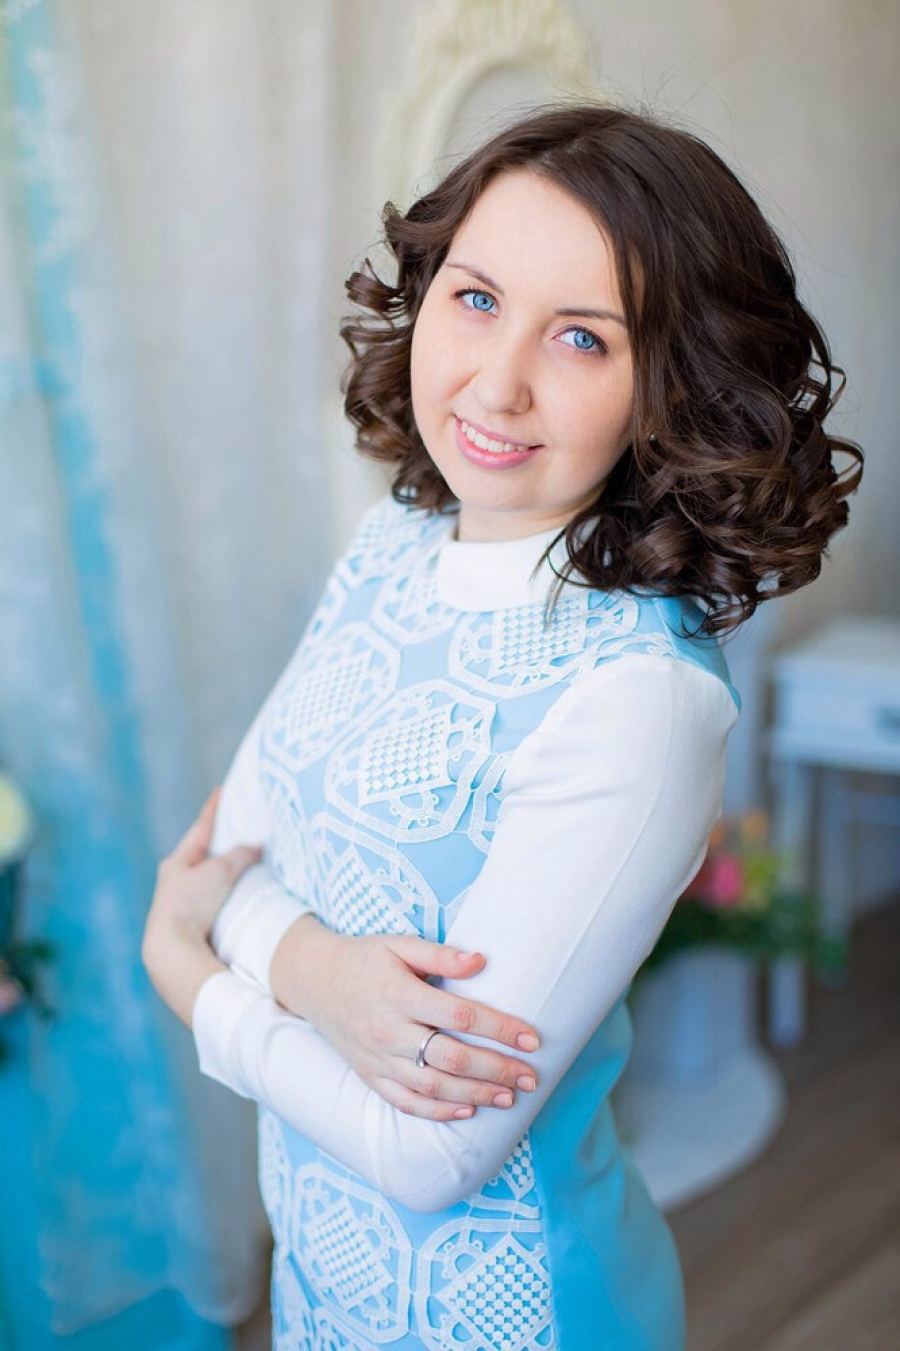 День российского студенчества - мой профессиональный праздник,считает Аделина Владимирова